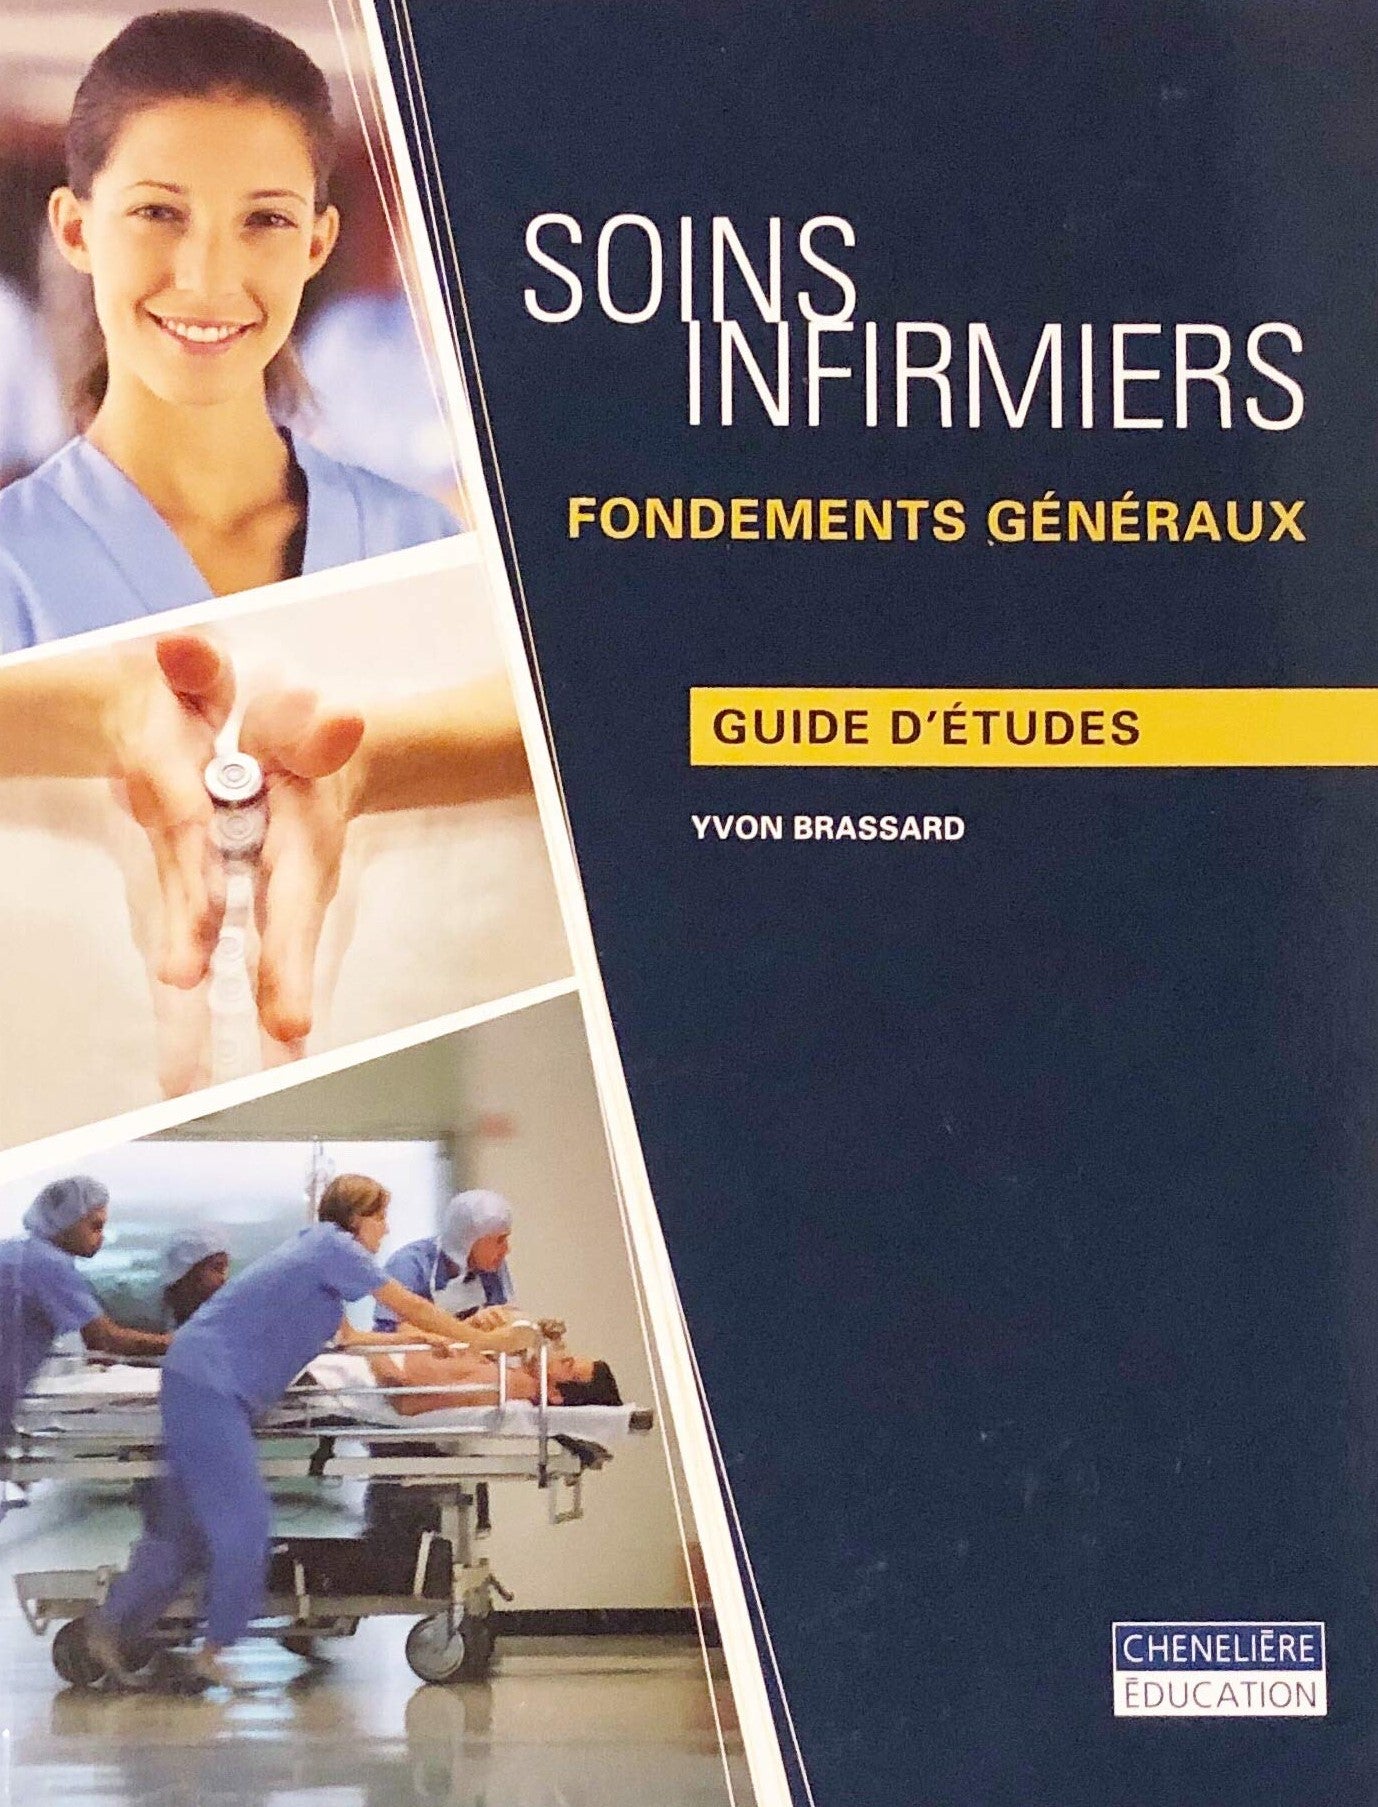 Soins Infirmiers : Fondements généraux : Guide d'études - Yvon Brassard